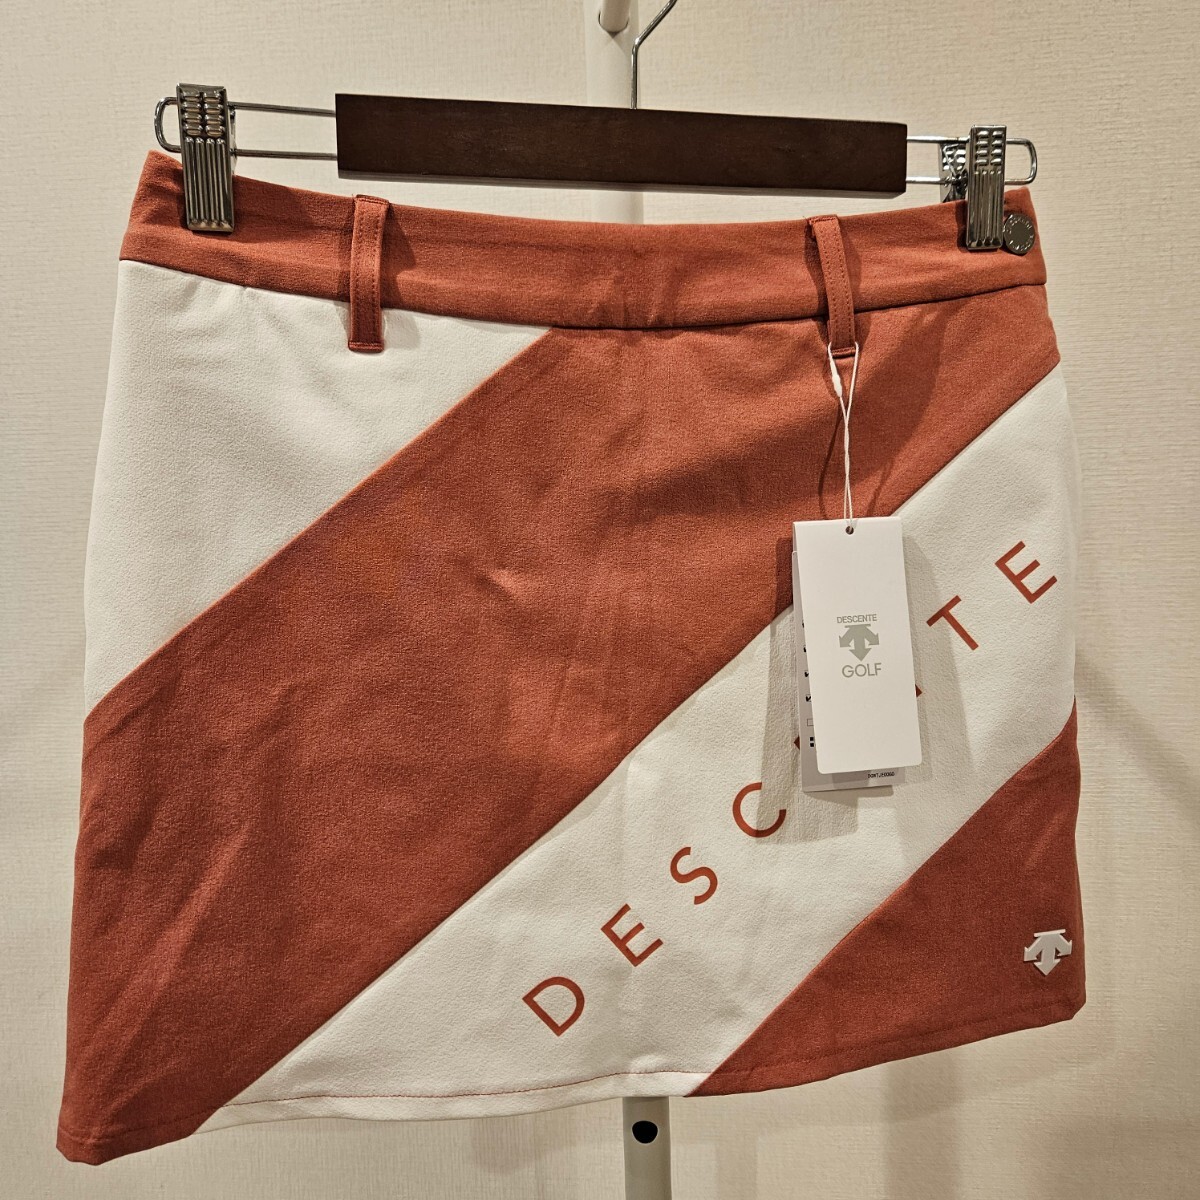 【送料無料】新品未使用 DESCENTE GOLF デサントゴルフ Sサイズ スカート ゴルフウェア インナー付の画像1